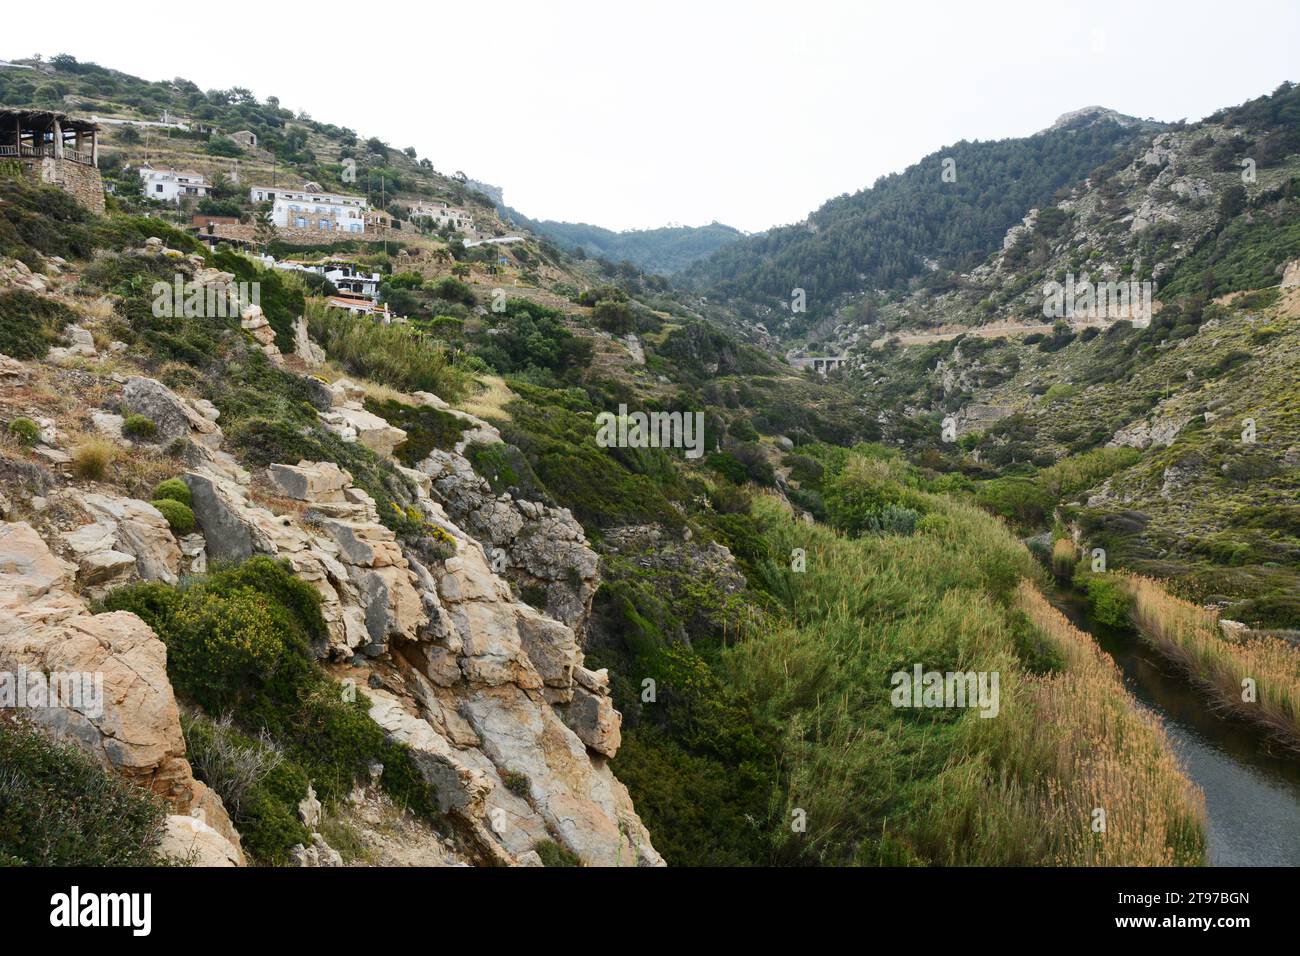 Das Bergdorf NAS. Am Rande des Chalaris Canyon, an der Nordküste von Ikaria, einer „blauen Zone“ auf den griechischen Inseln. Stockfoto